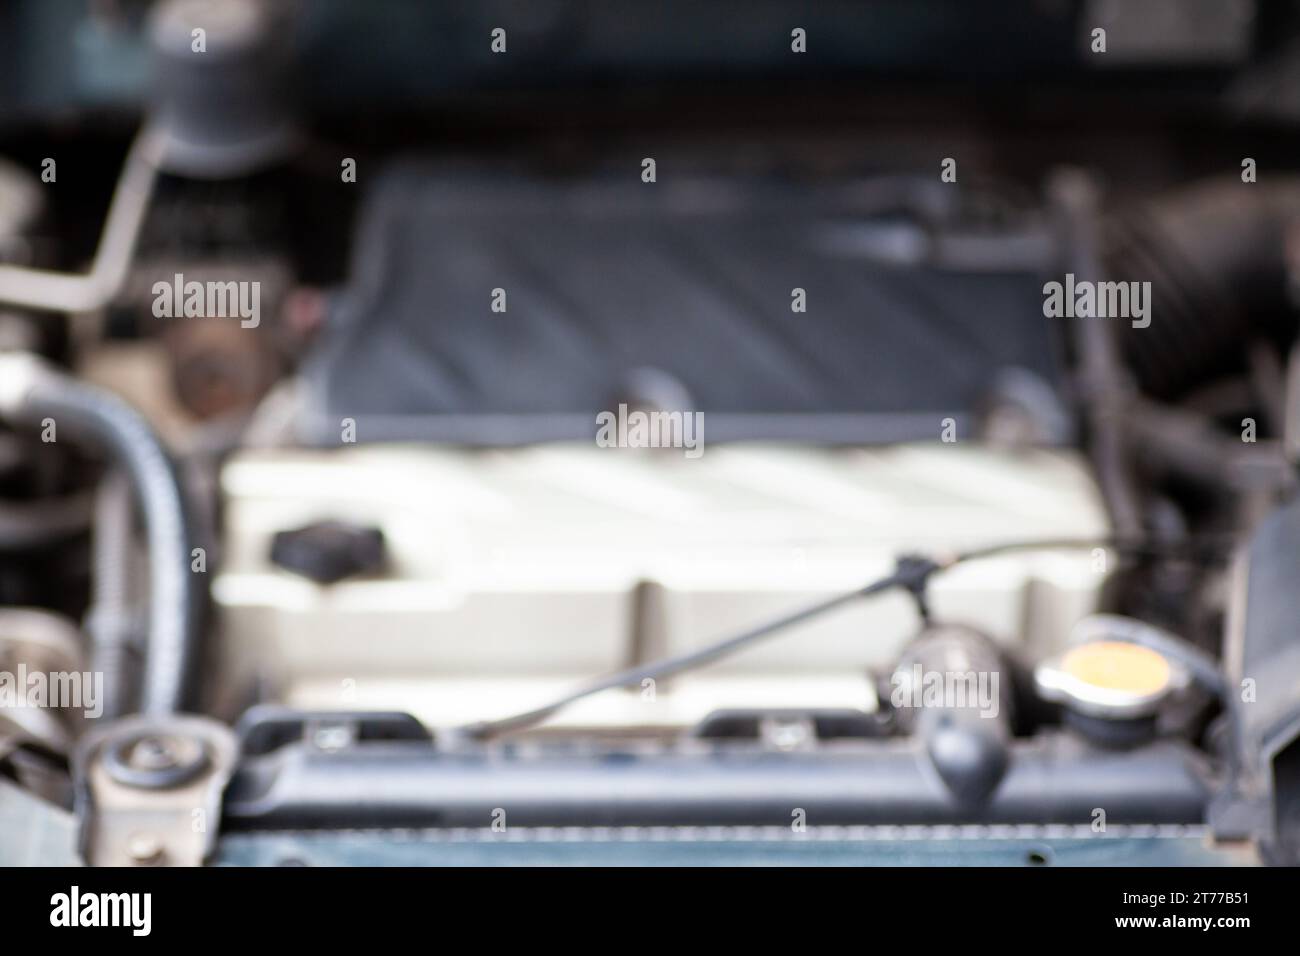 Dai un'occhiata sotto il cofano della tua auto con questa istantanea che presenta componenti del motore, tubi flessibili e fili, una visione interna del cuore degli automi Foto Stock